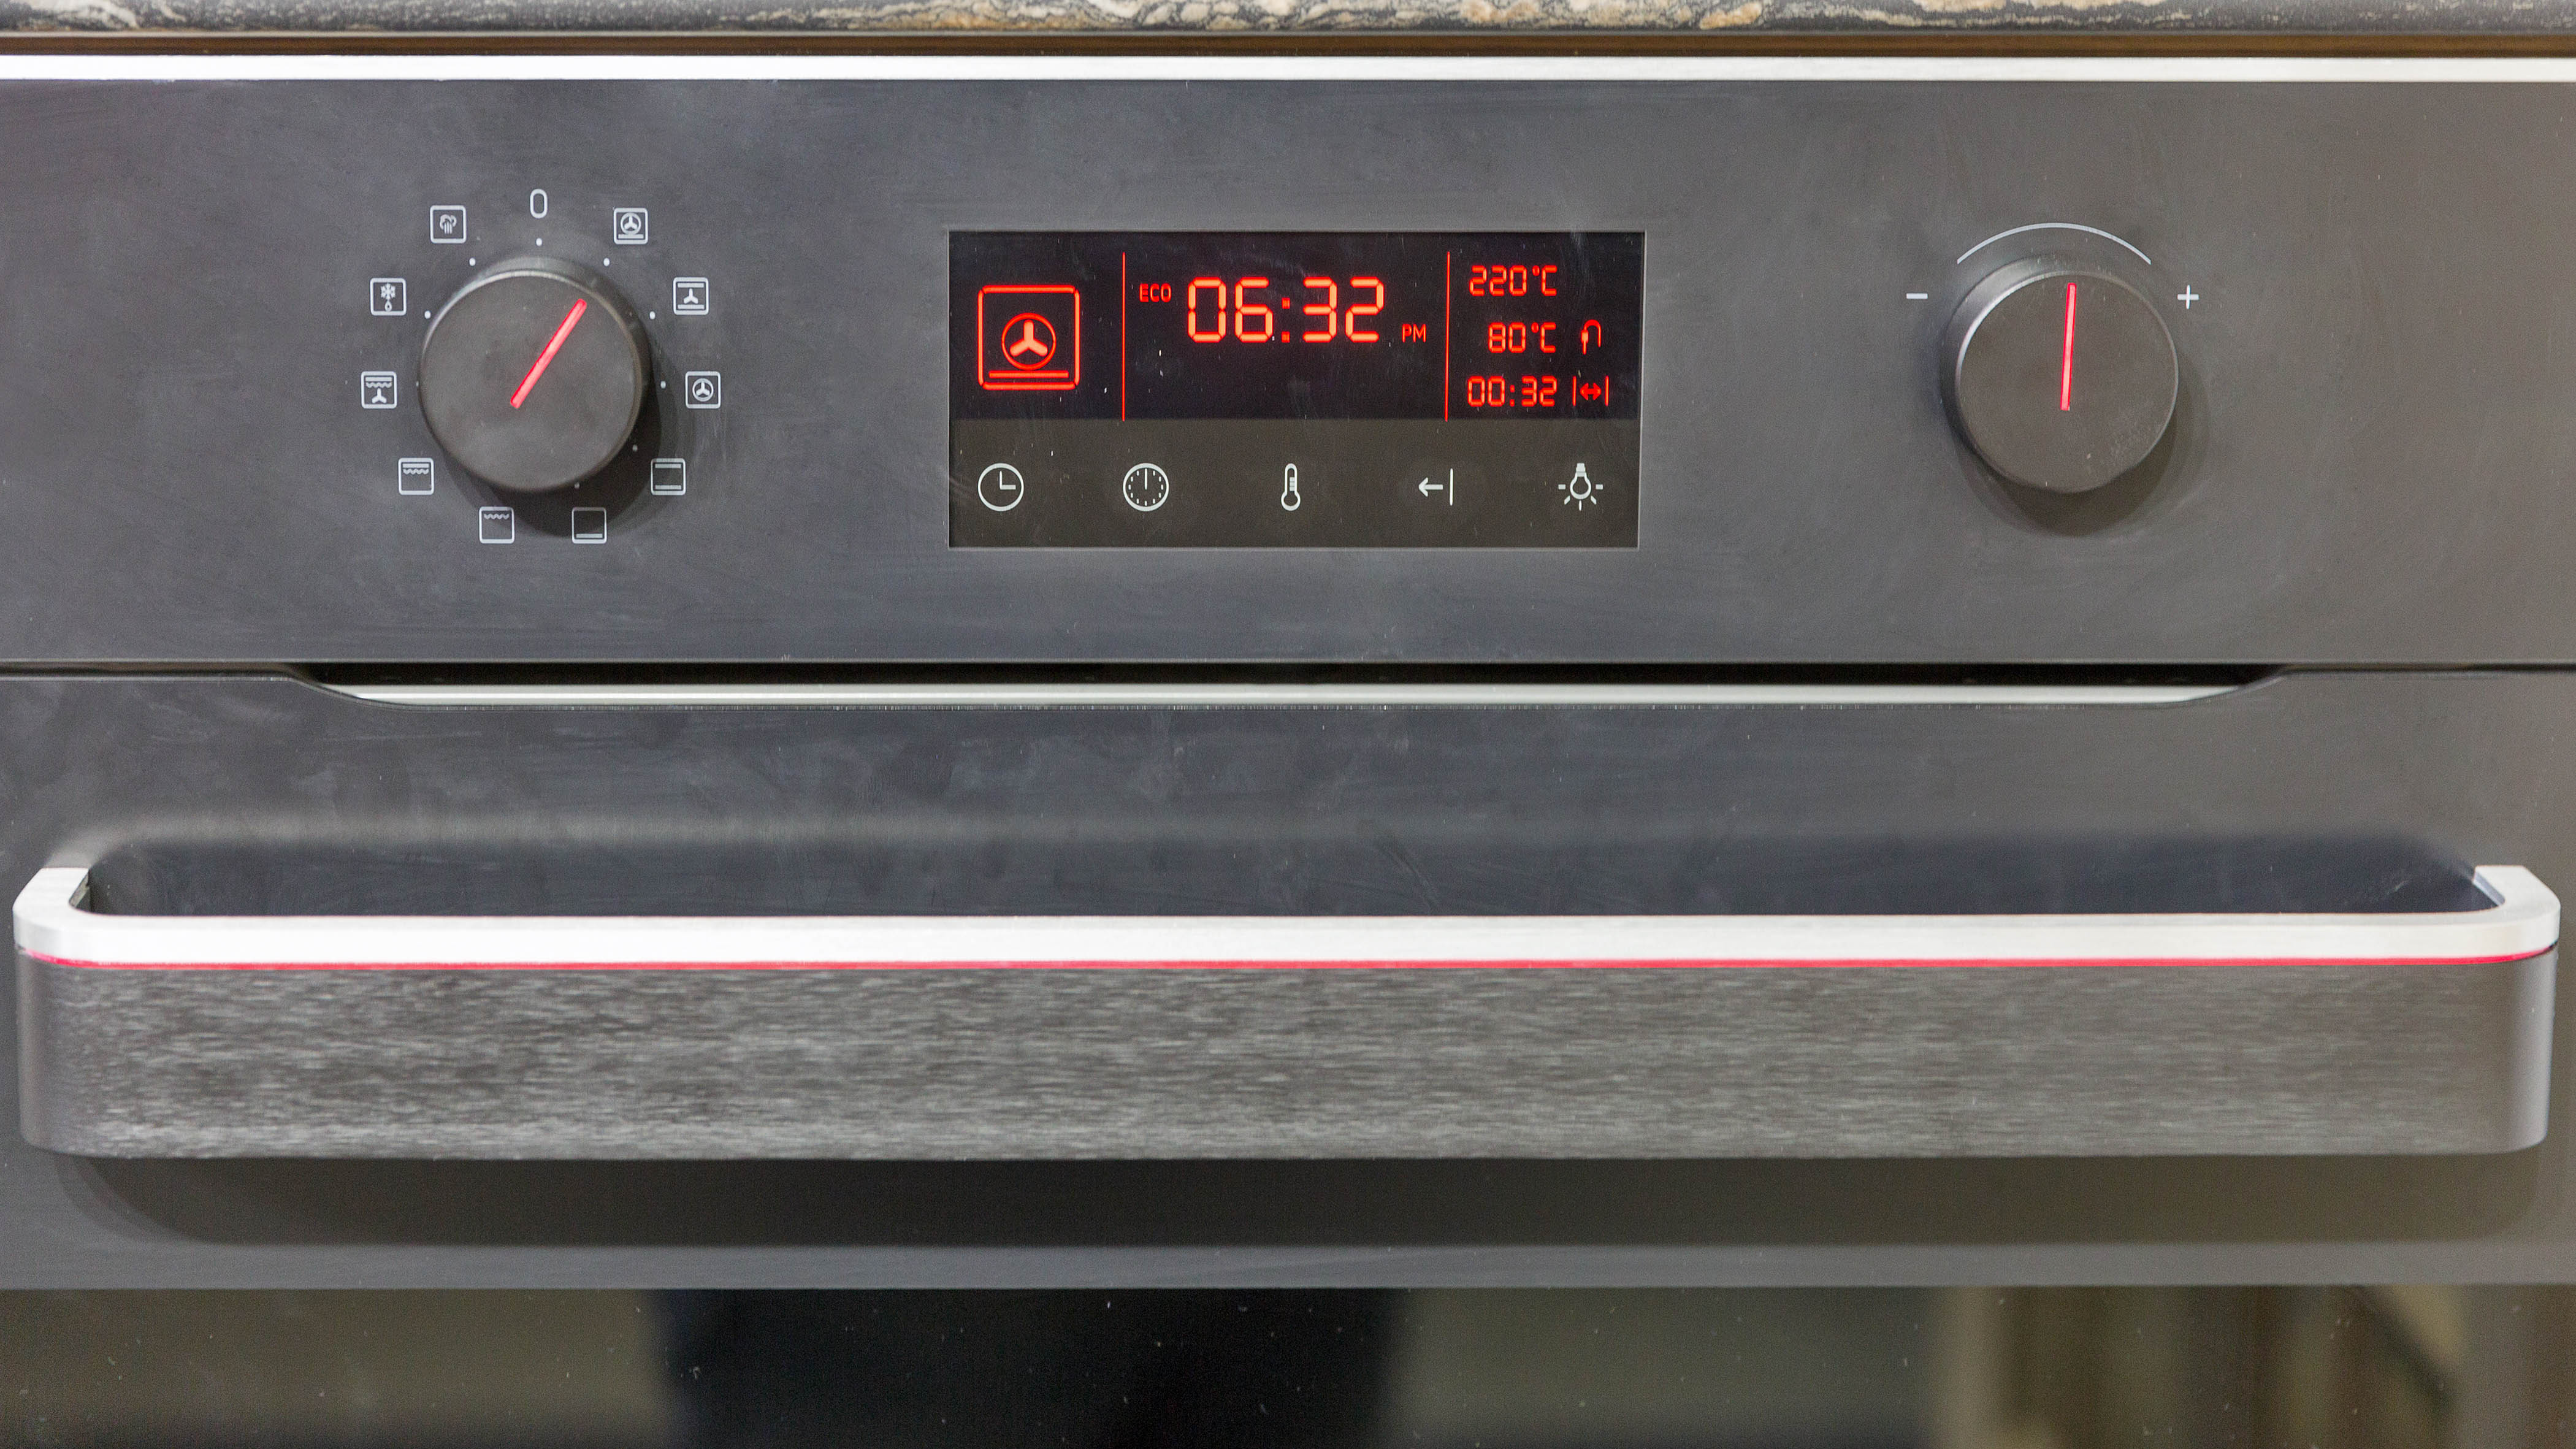 Um close-up do painel de controle de um forno